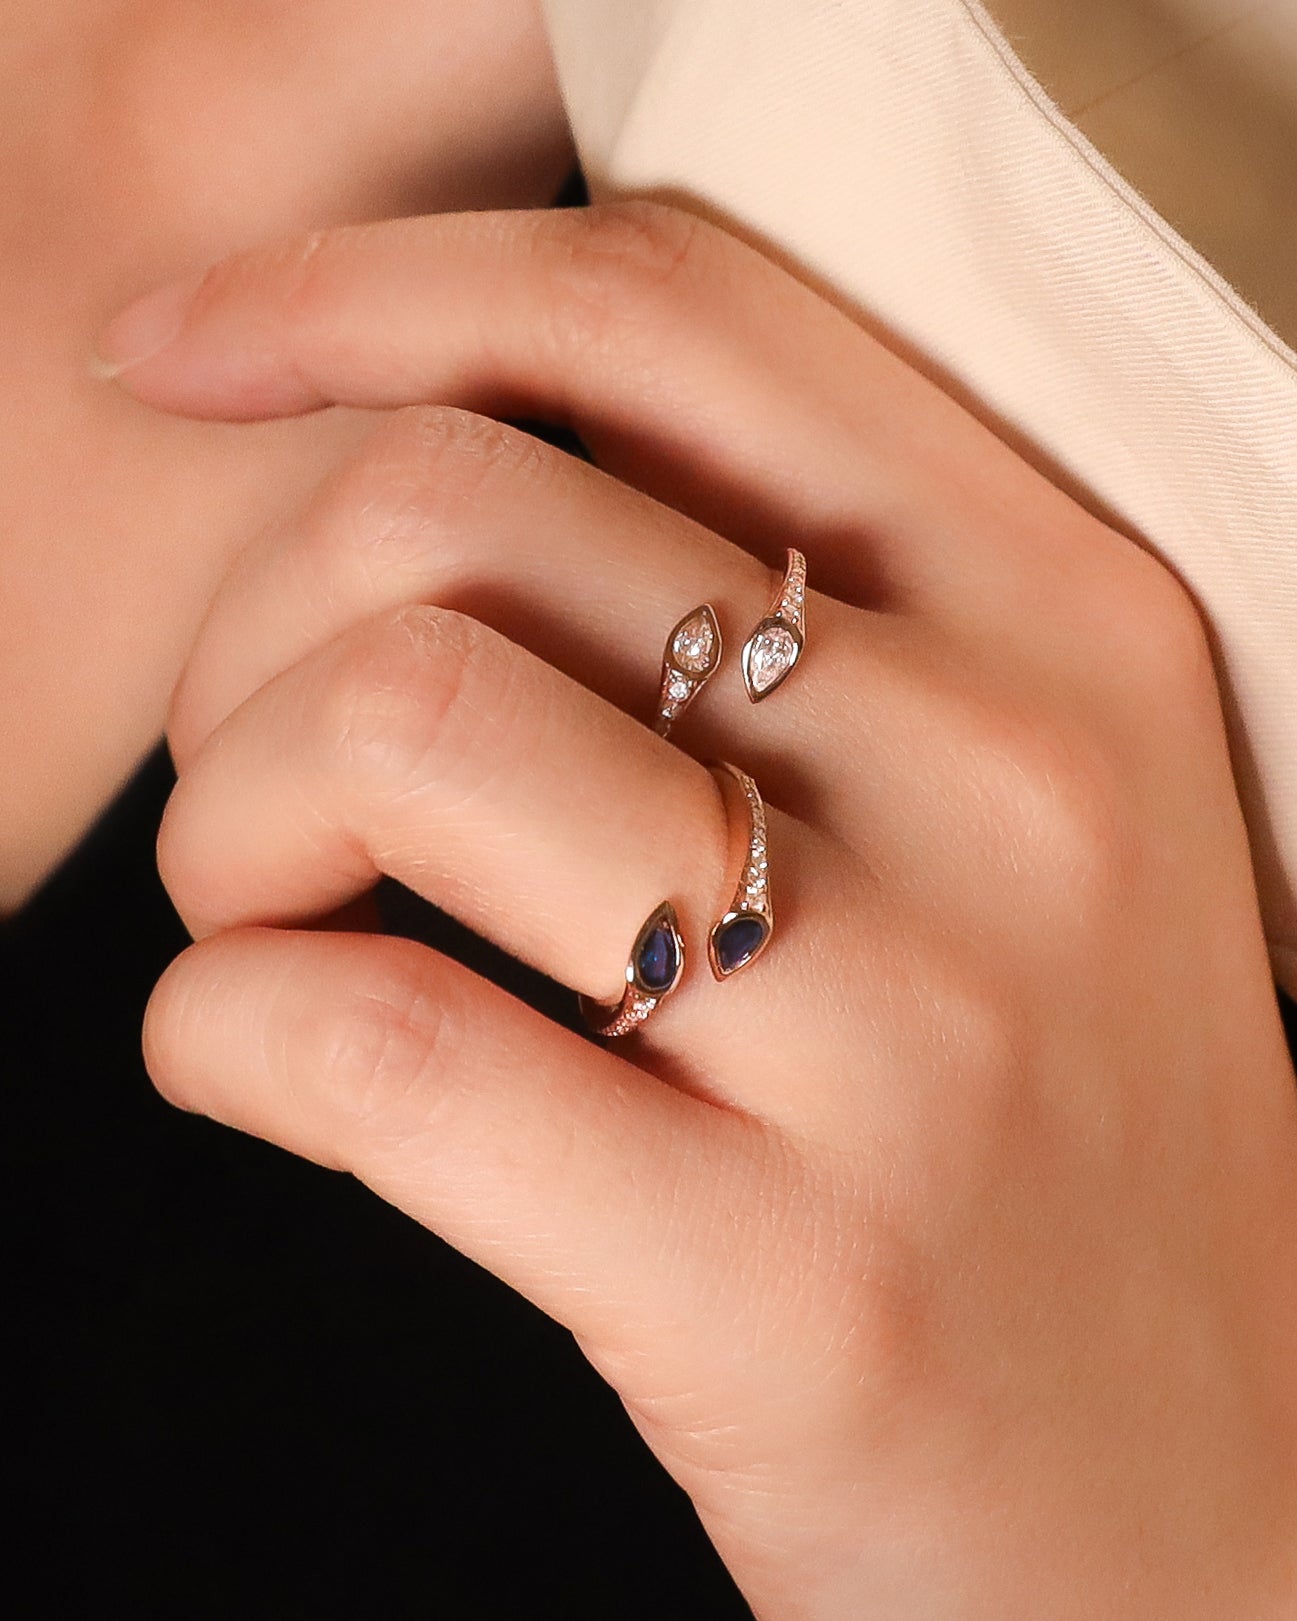 Iva Pear Diamond Ring